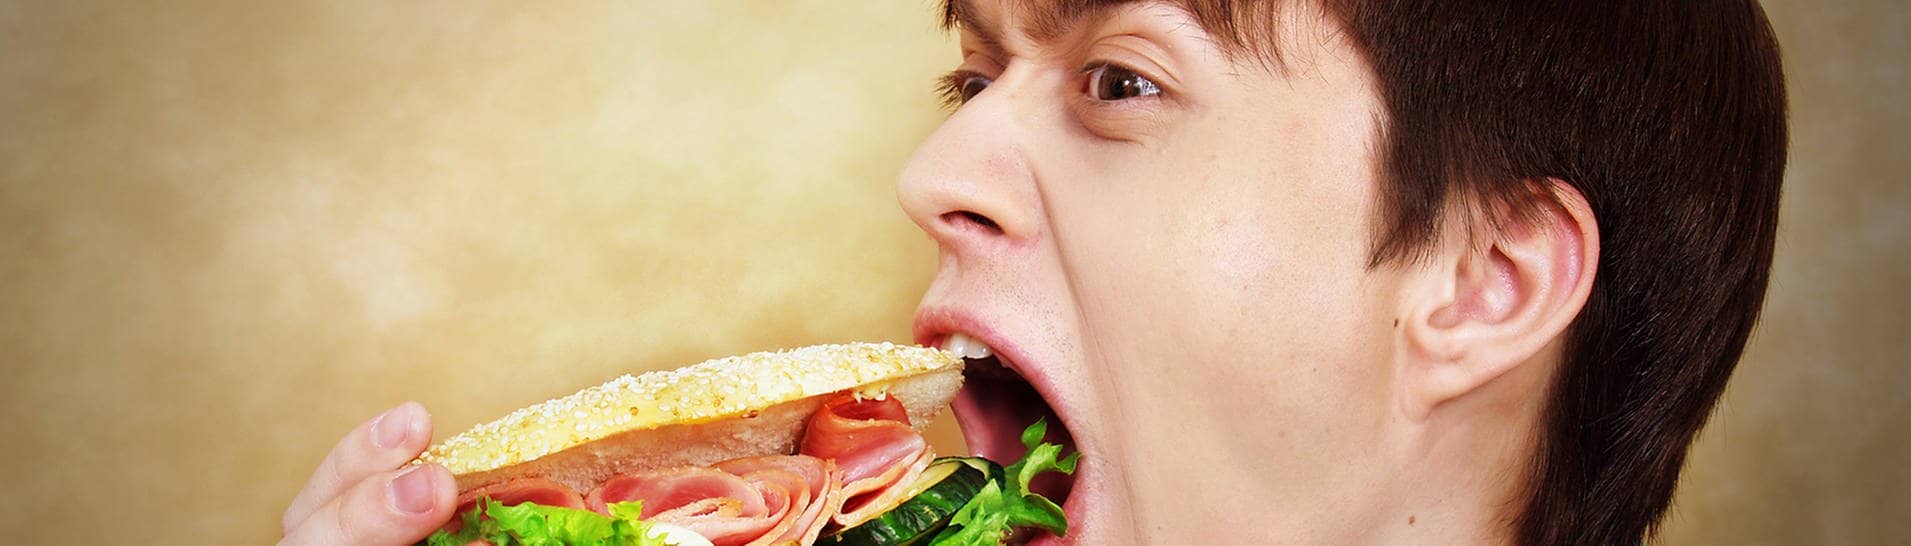 Mann der ein Sandwich isst